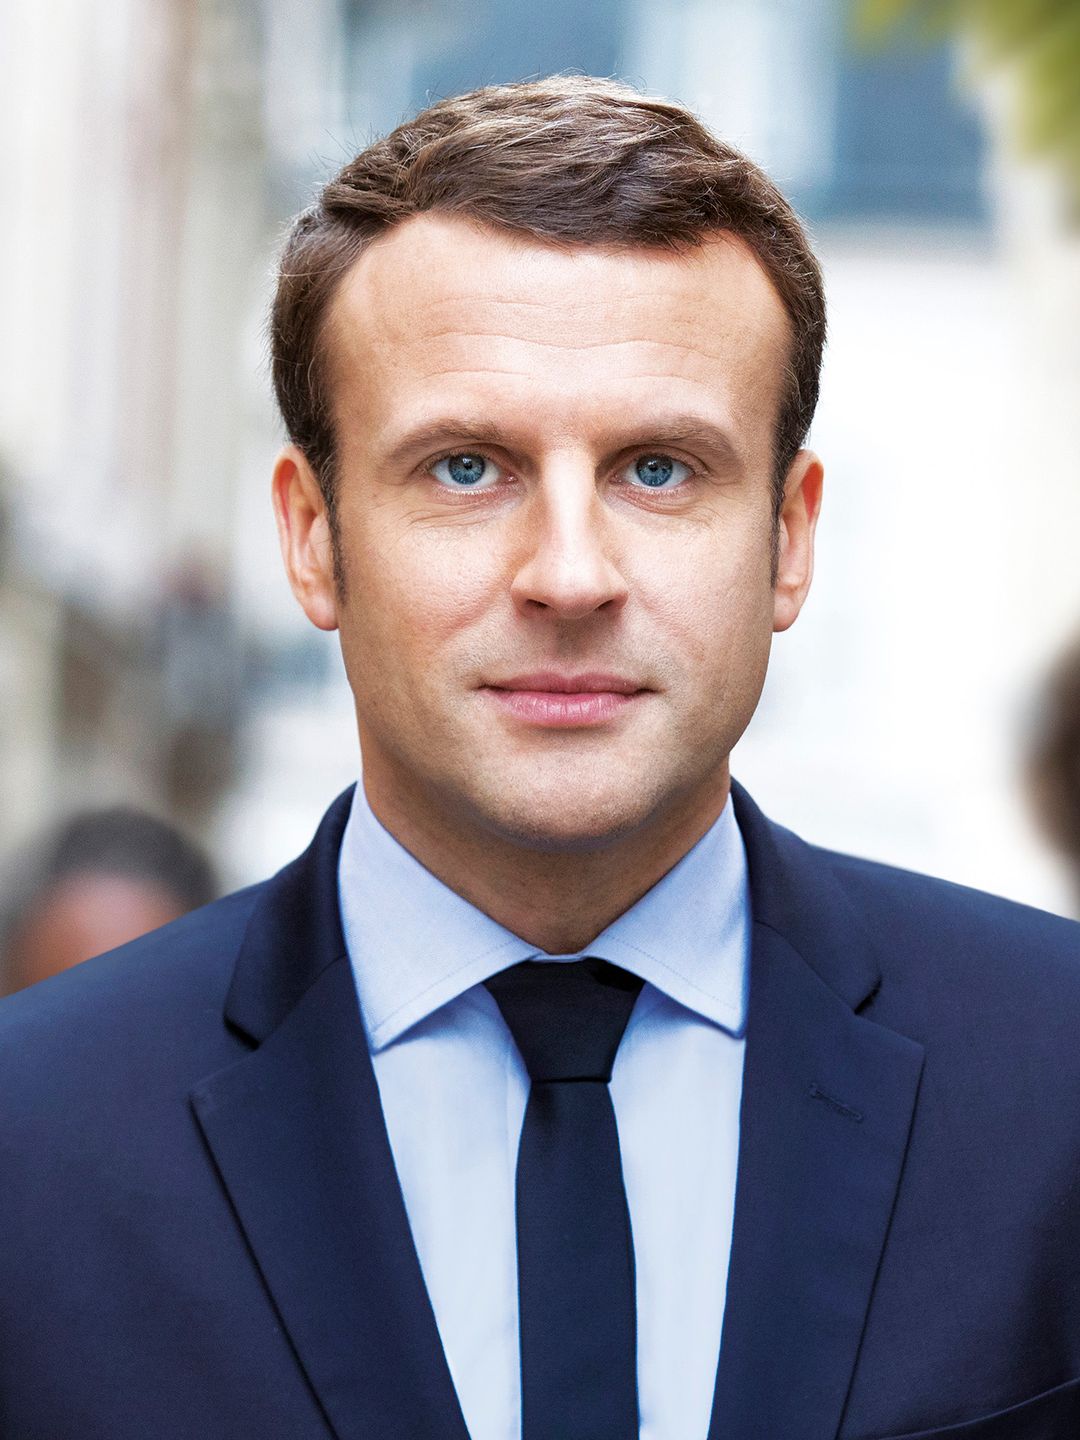 Emmanuel Macron where does he live